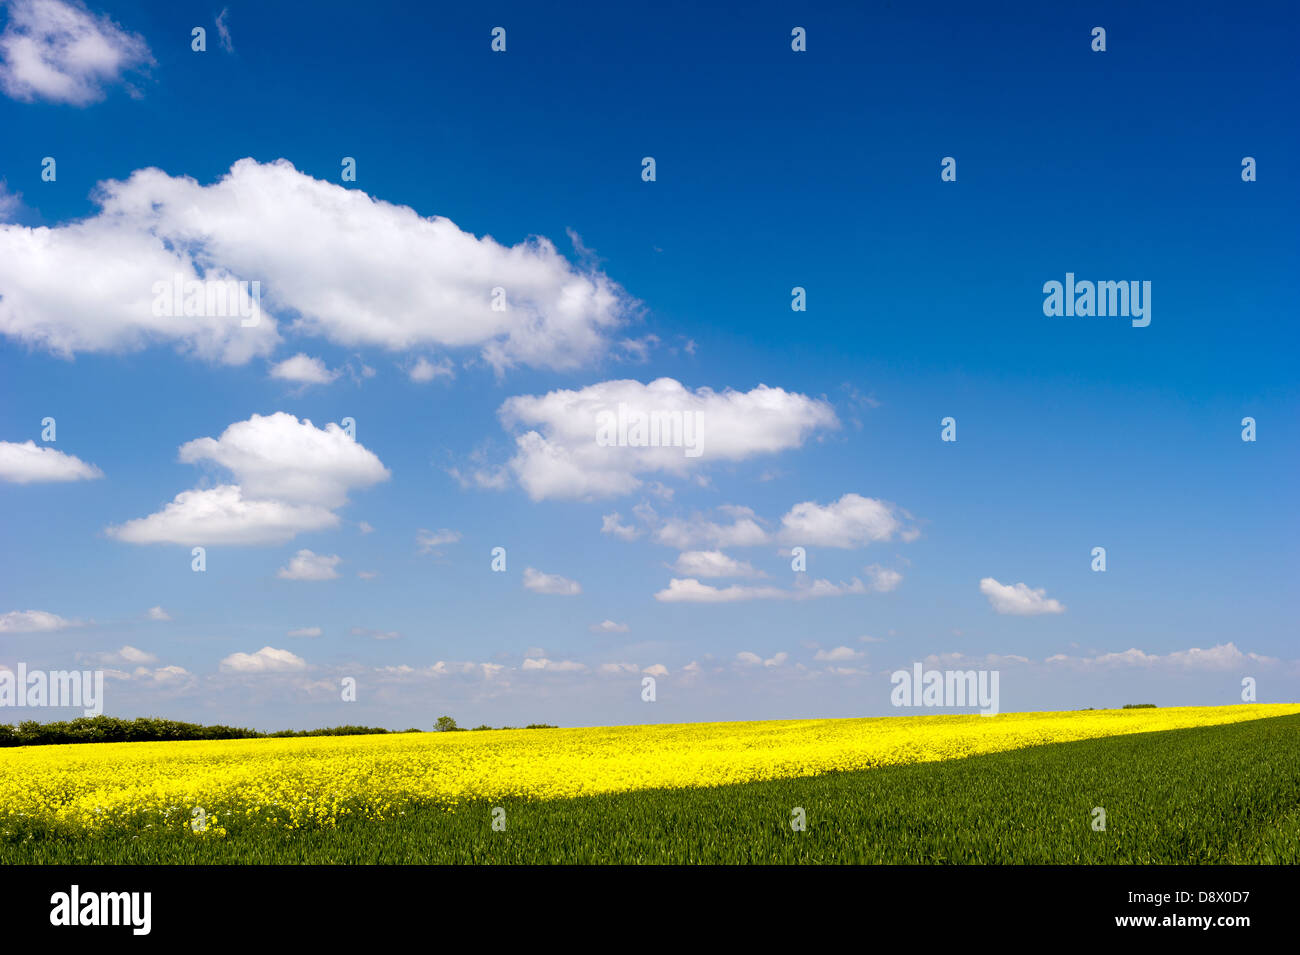 Ein Feld in Yorkshire, Gelbe Raps in voller Blüte vor einem blauen Himmel mit weißen Wolken über berücksichtigt. Stockfoto